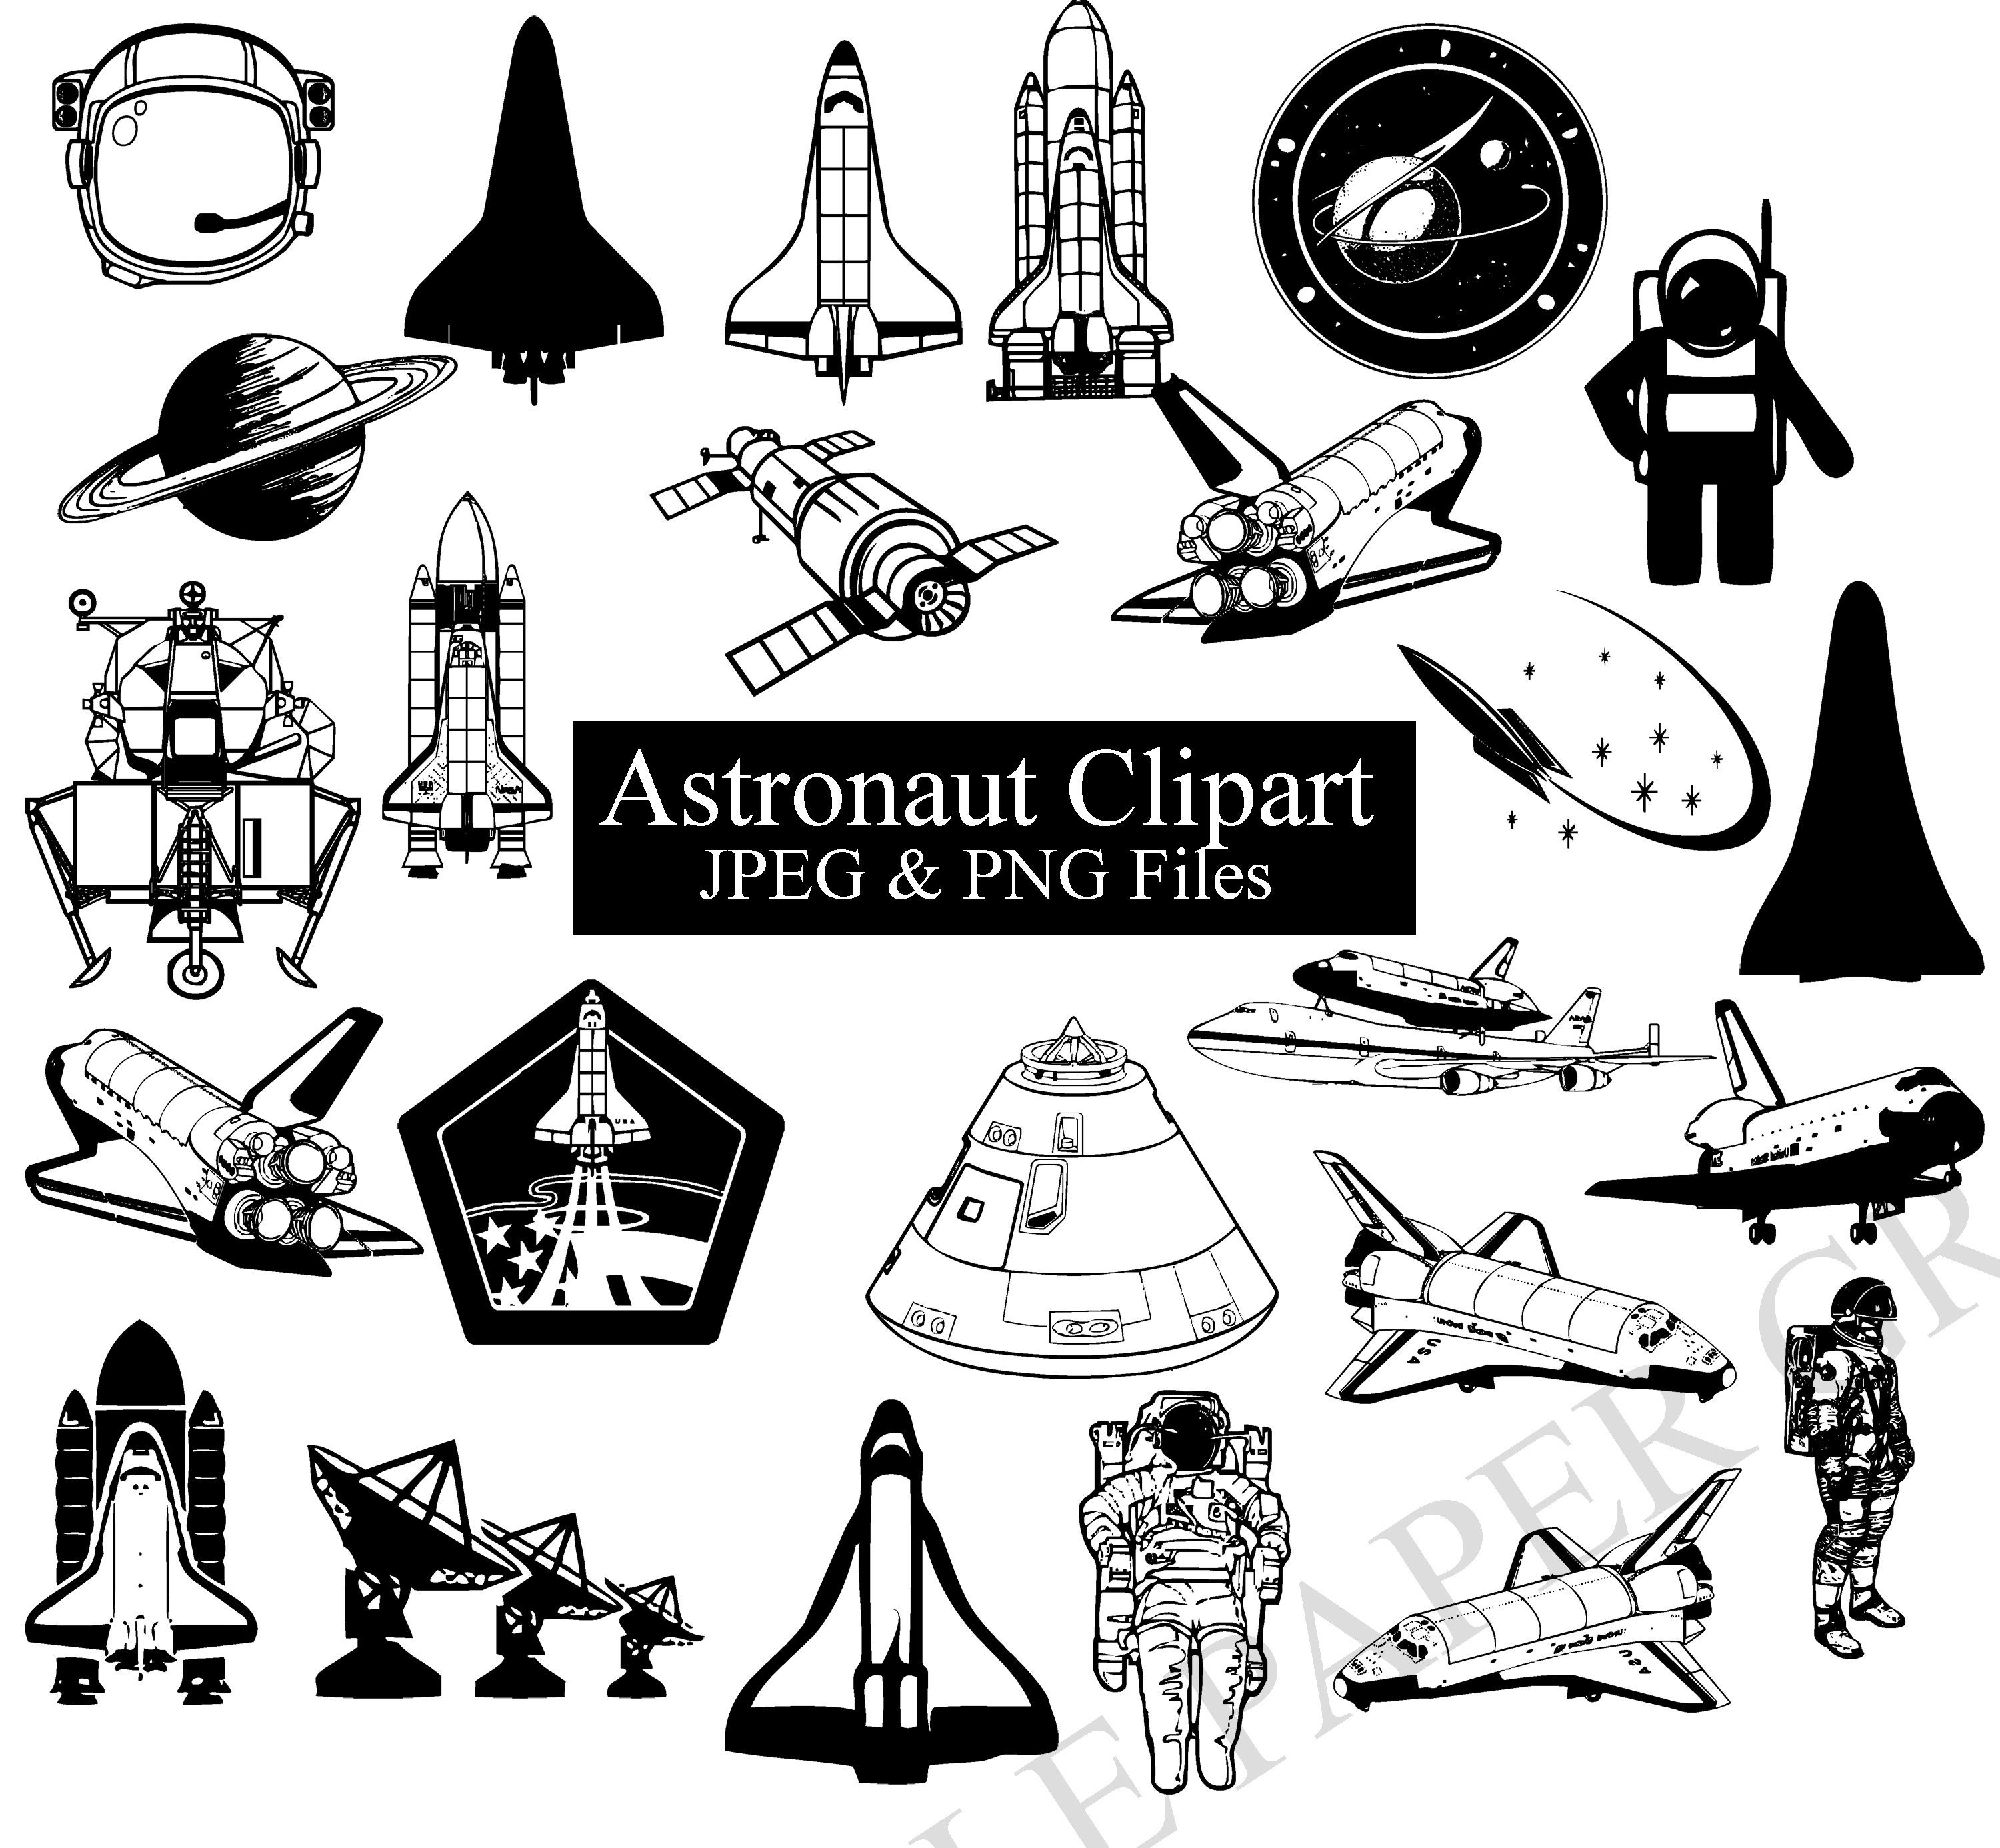 nasa space clip art